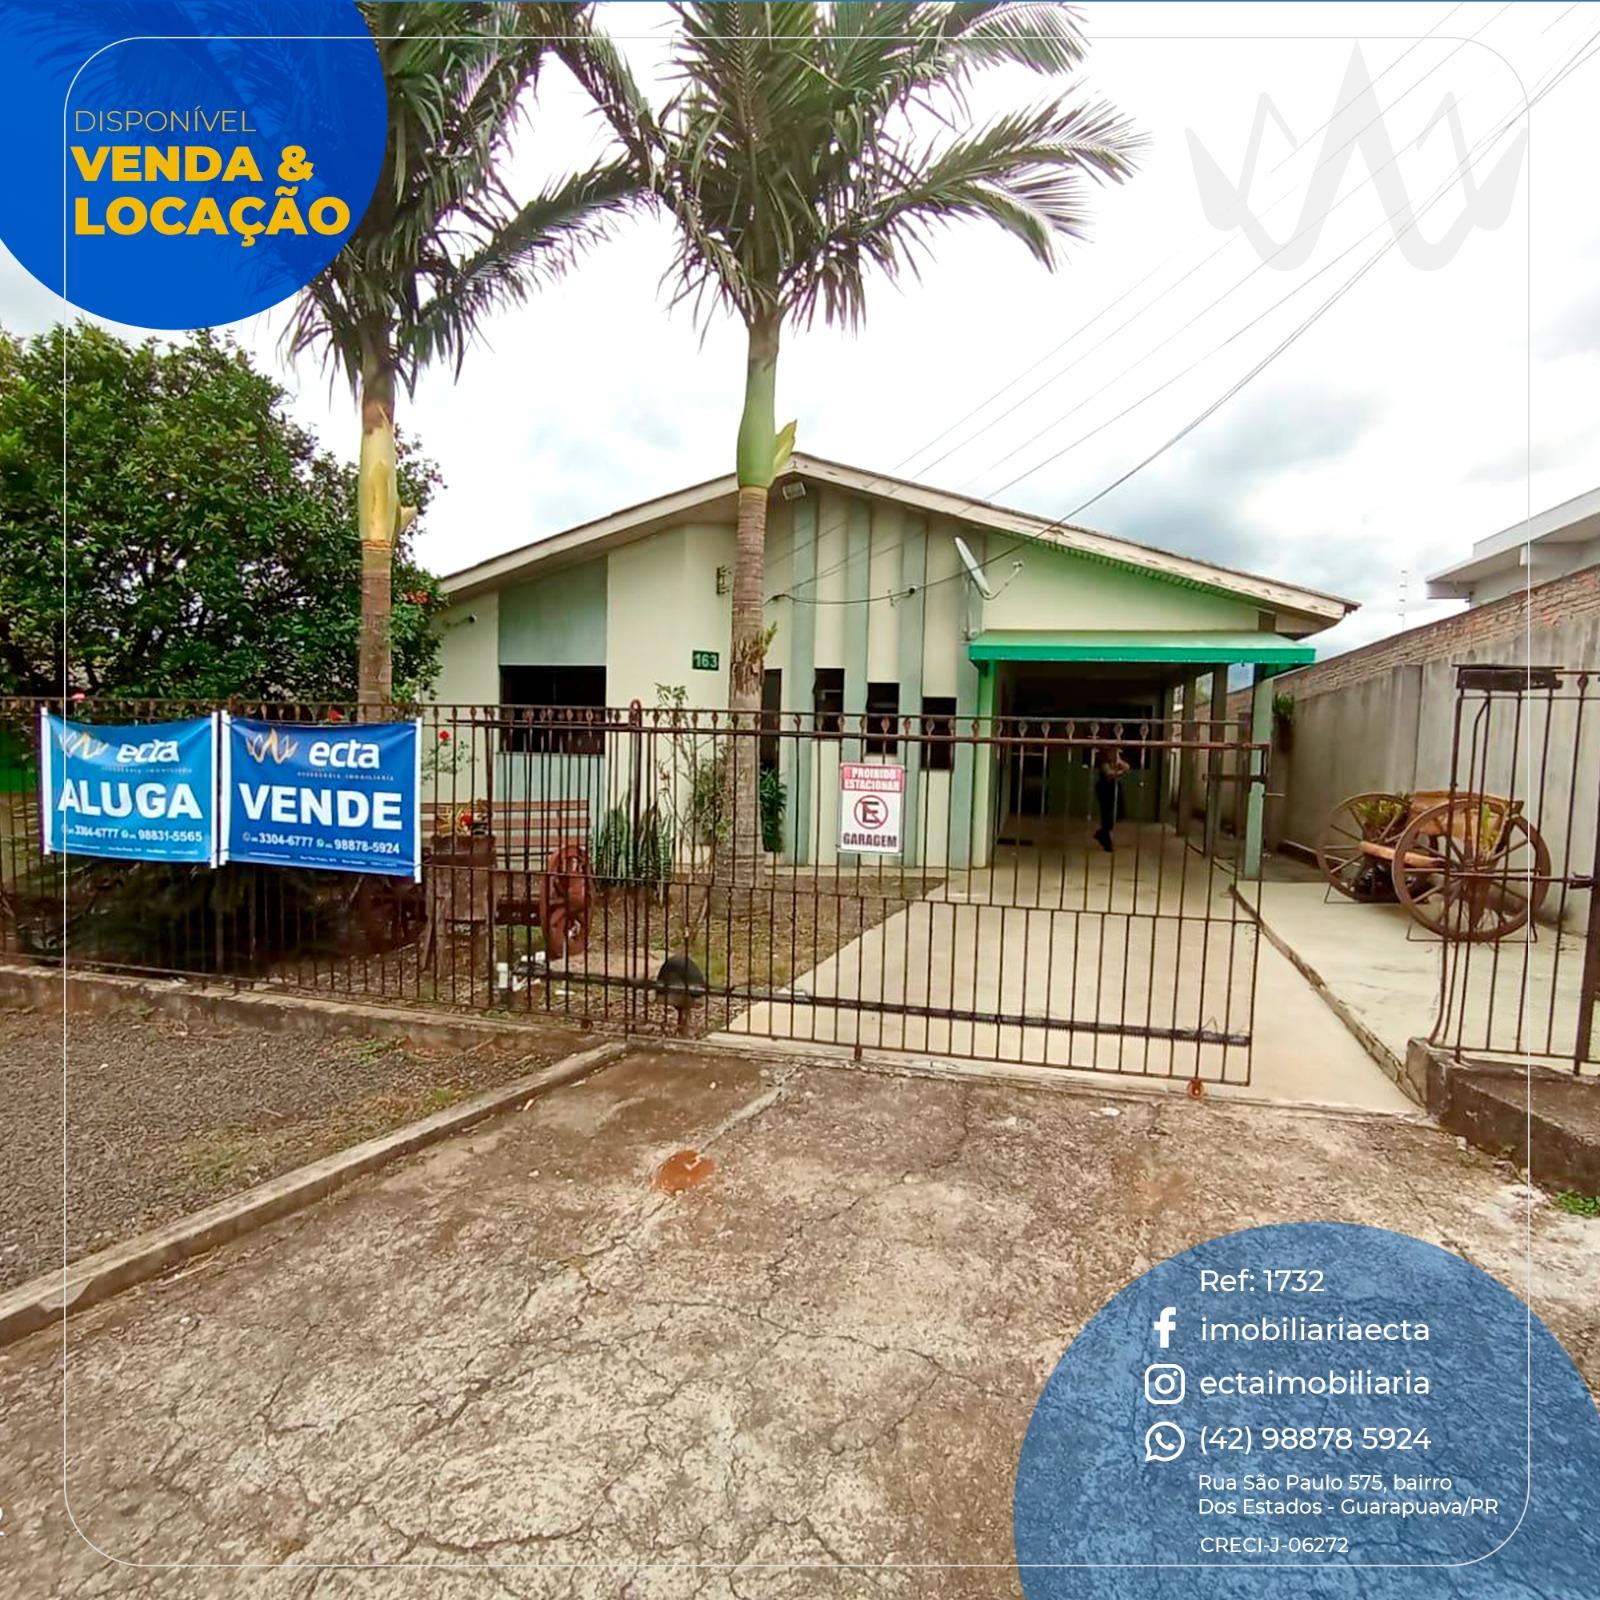 Casa à venda, Vila Carli, GUARAPUAVA - PR